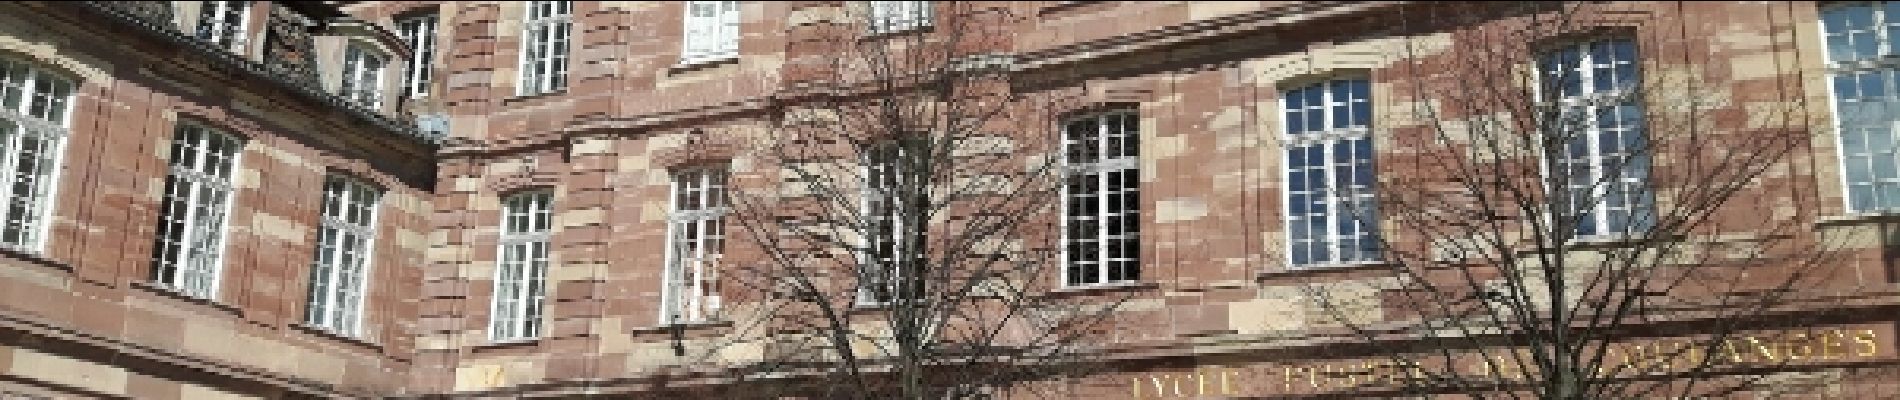 Point d'intérêt Strasbourg - Point 2 - Ancien collège des Jésuites  - 1755 - Photo